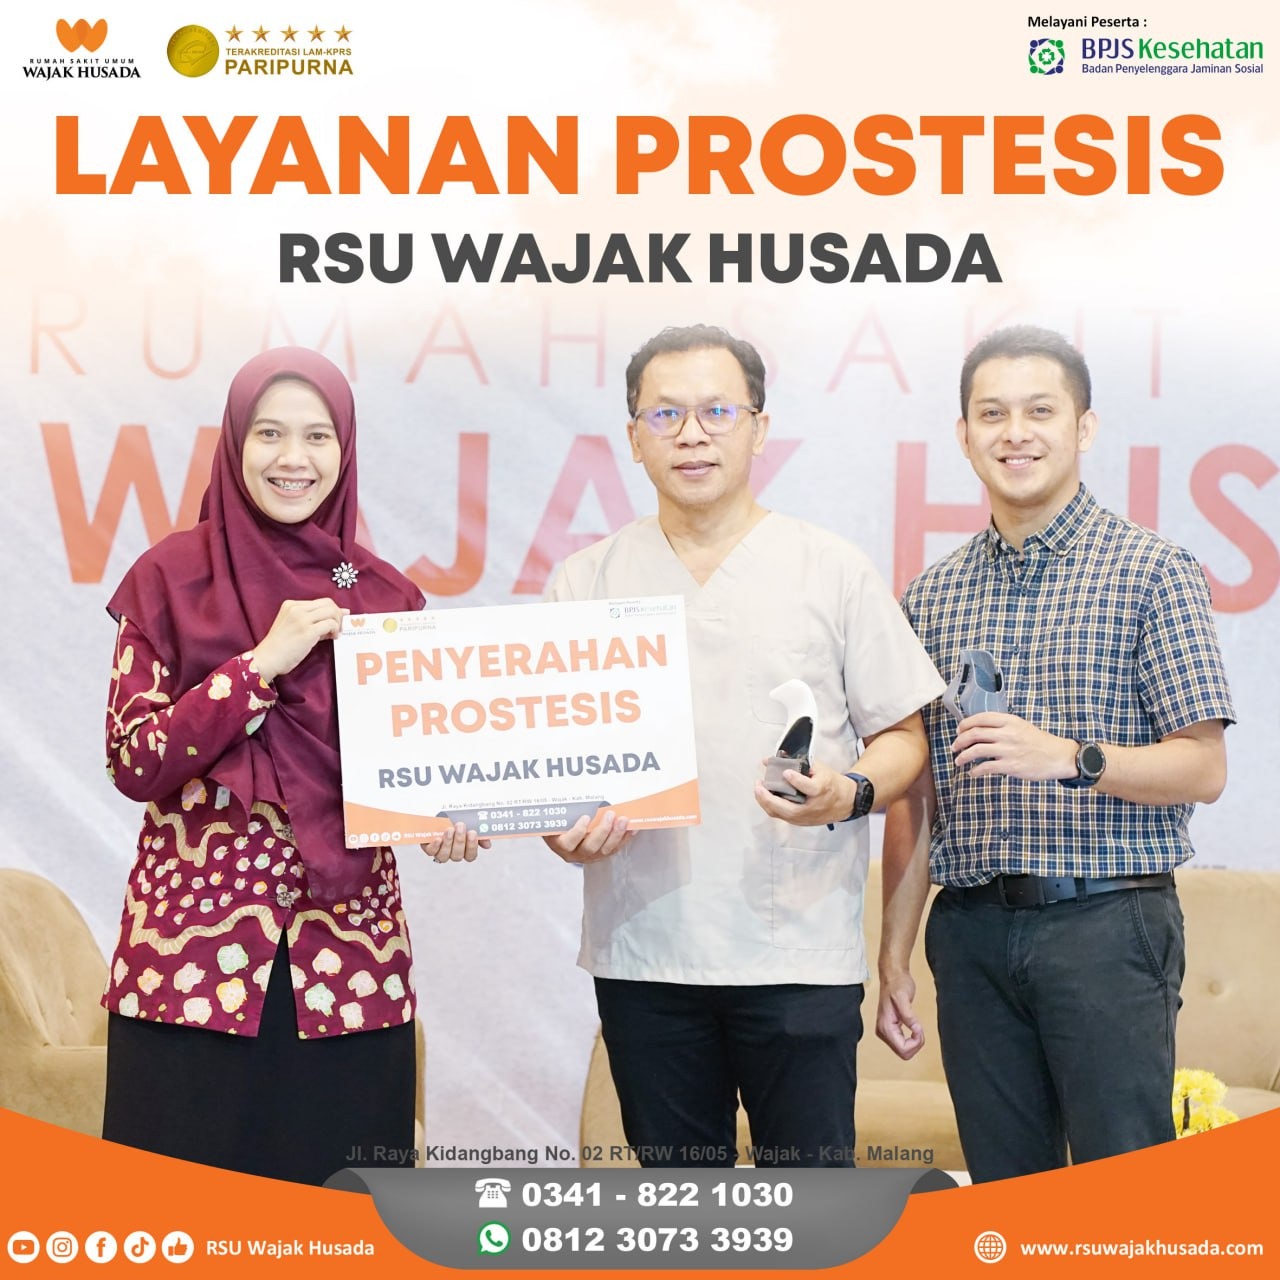 Salah satu program kesehatan Puguh Wiji Pamungkas bersama RSU Wajak Husada.